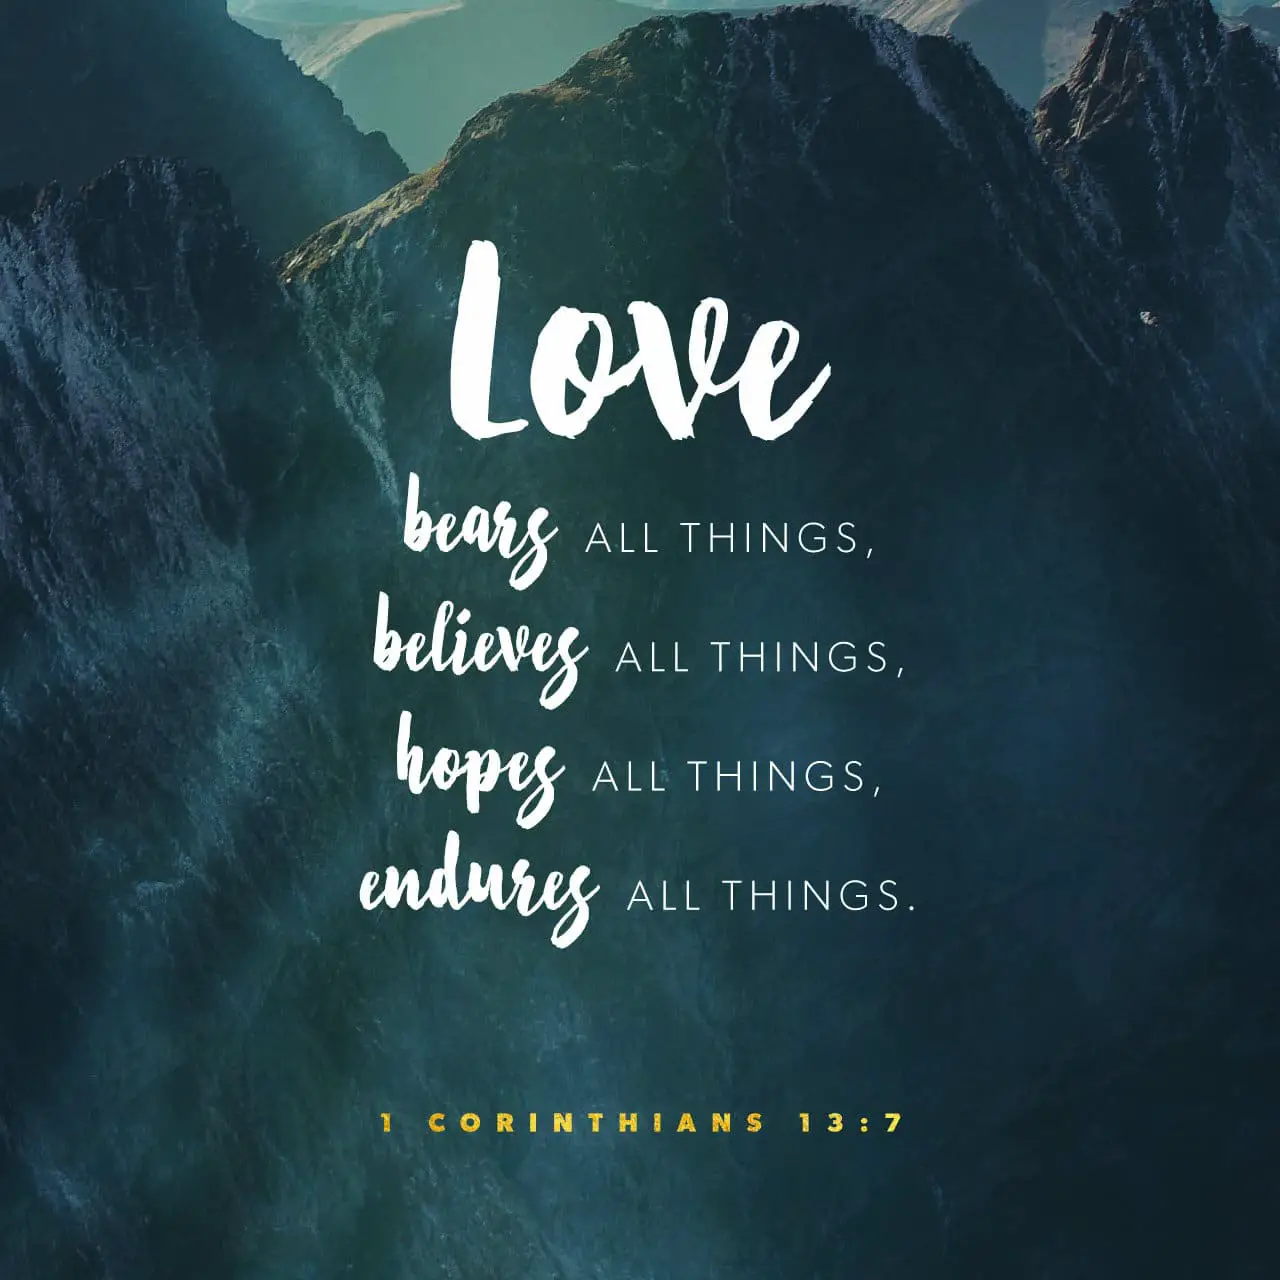 Love bears all things, believes all things, hopes all things, endures all things - 1 Corinthians 13:7